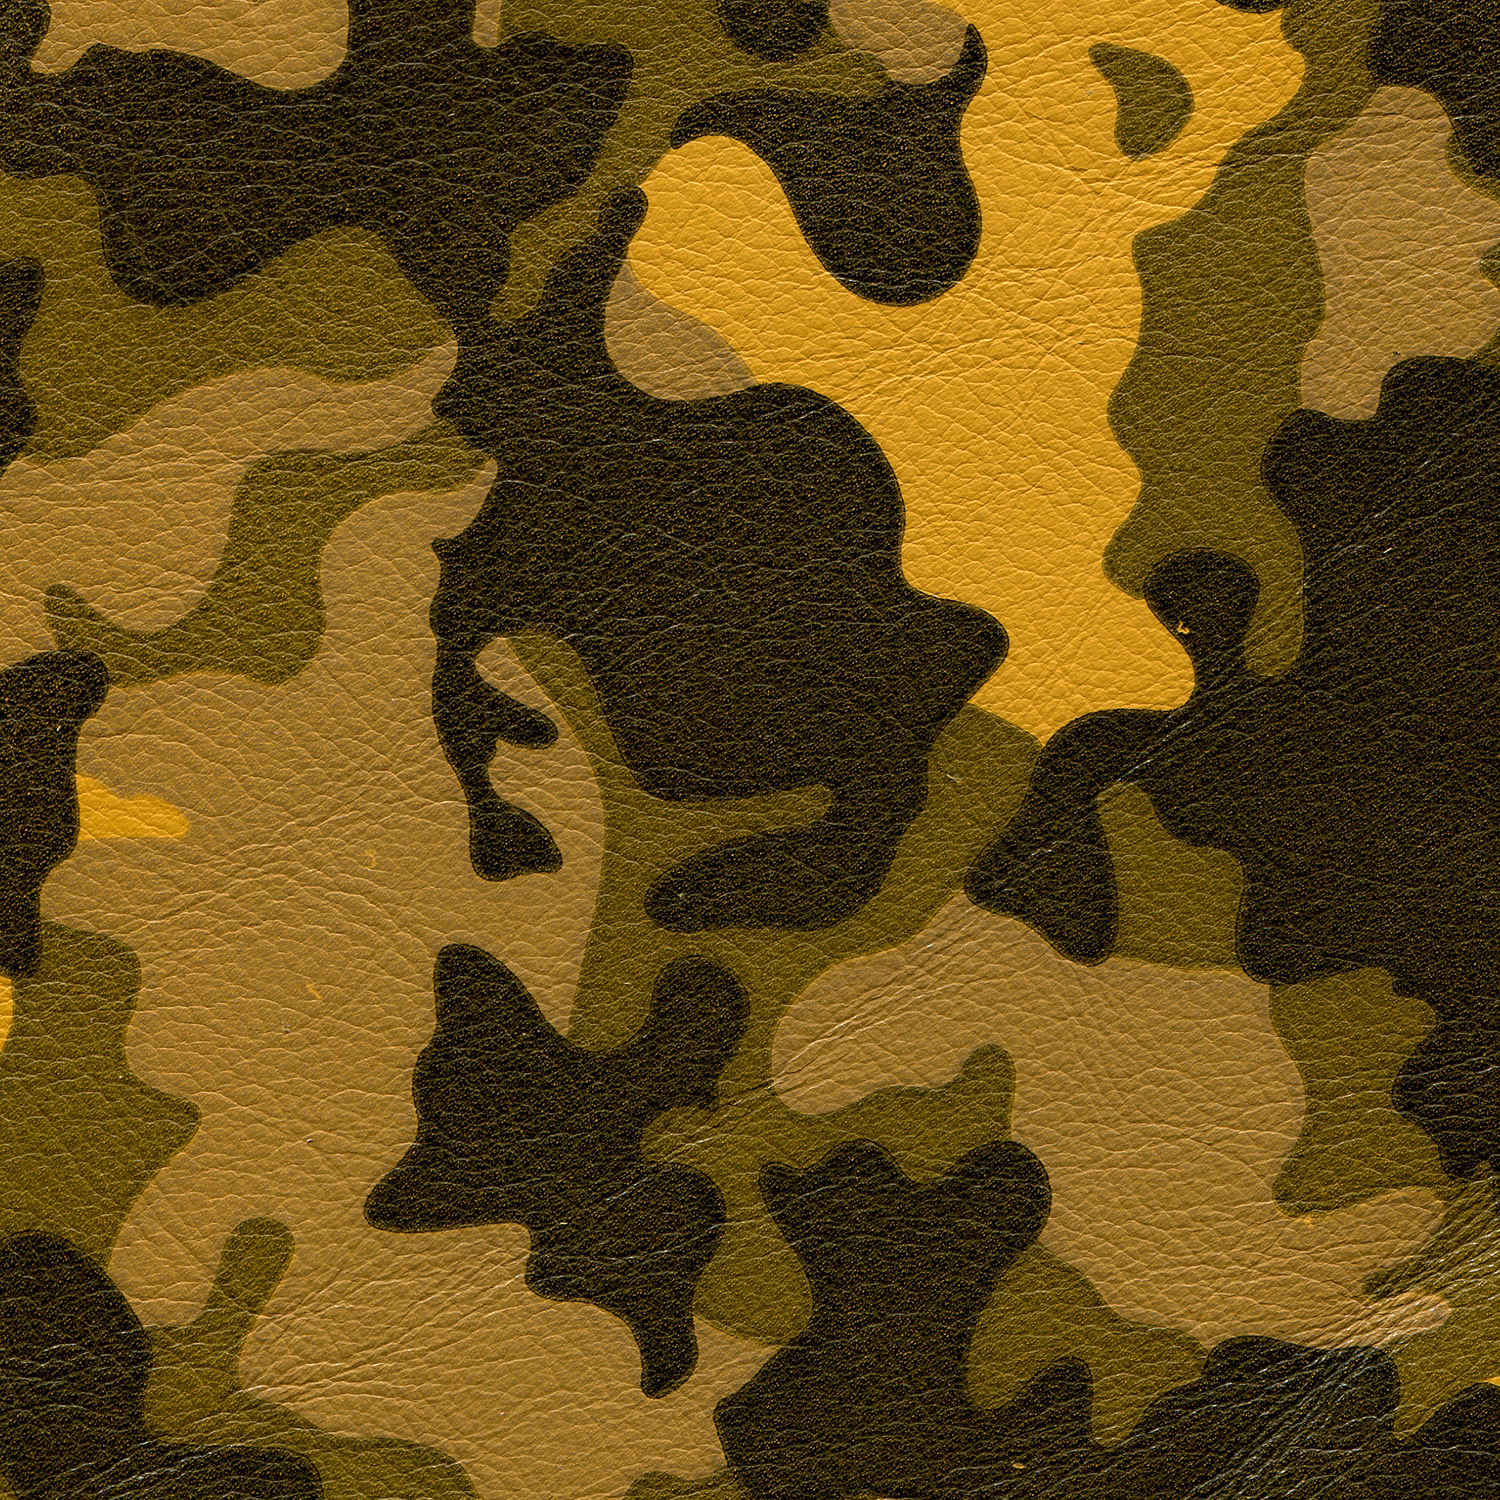 https://www.edsim.com/wp-content/uploads/2017/06/Camouflage-Butterscotch-004_72dpi.jpg